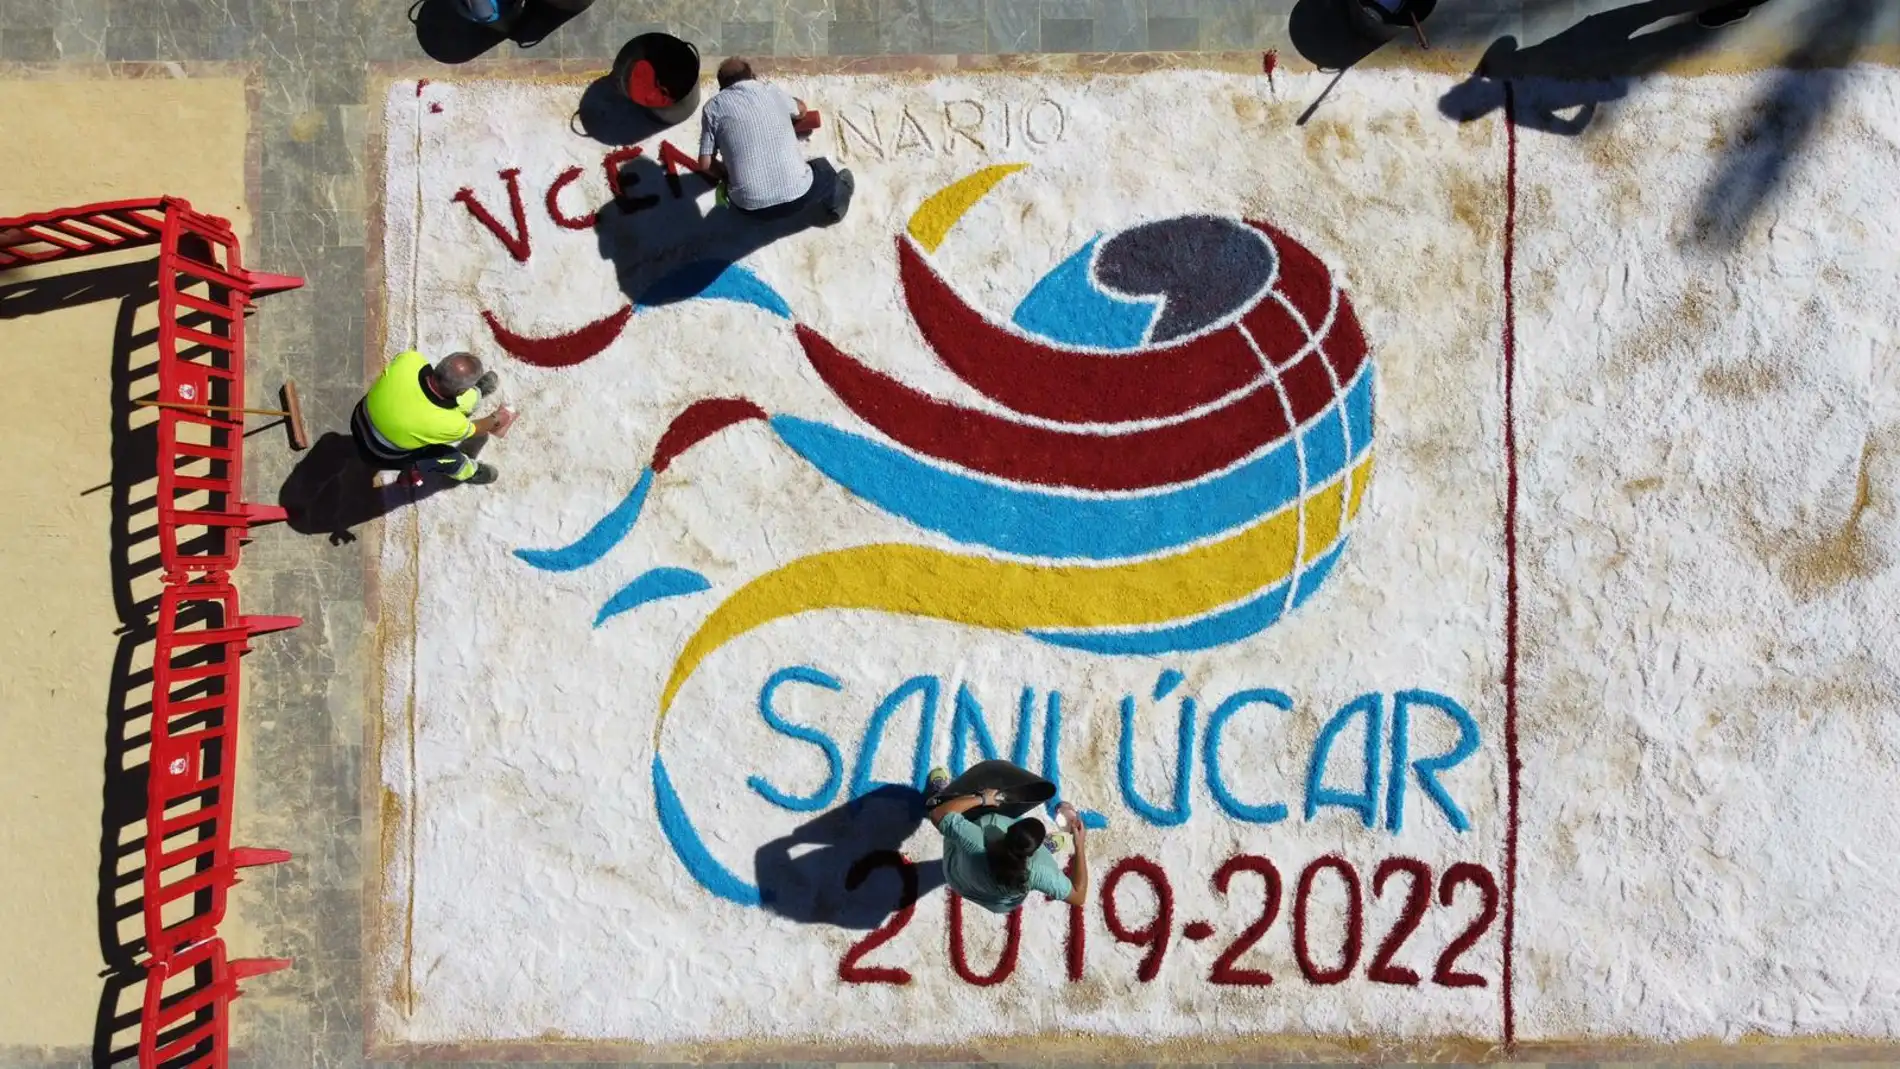 Una alfombra de sal conmemora el quinto centenario de la Circunnavegación